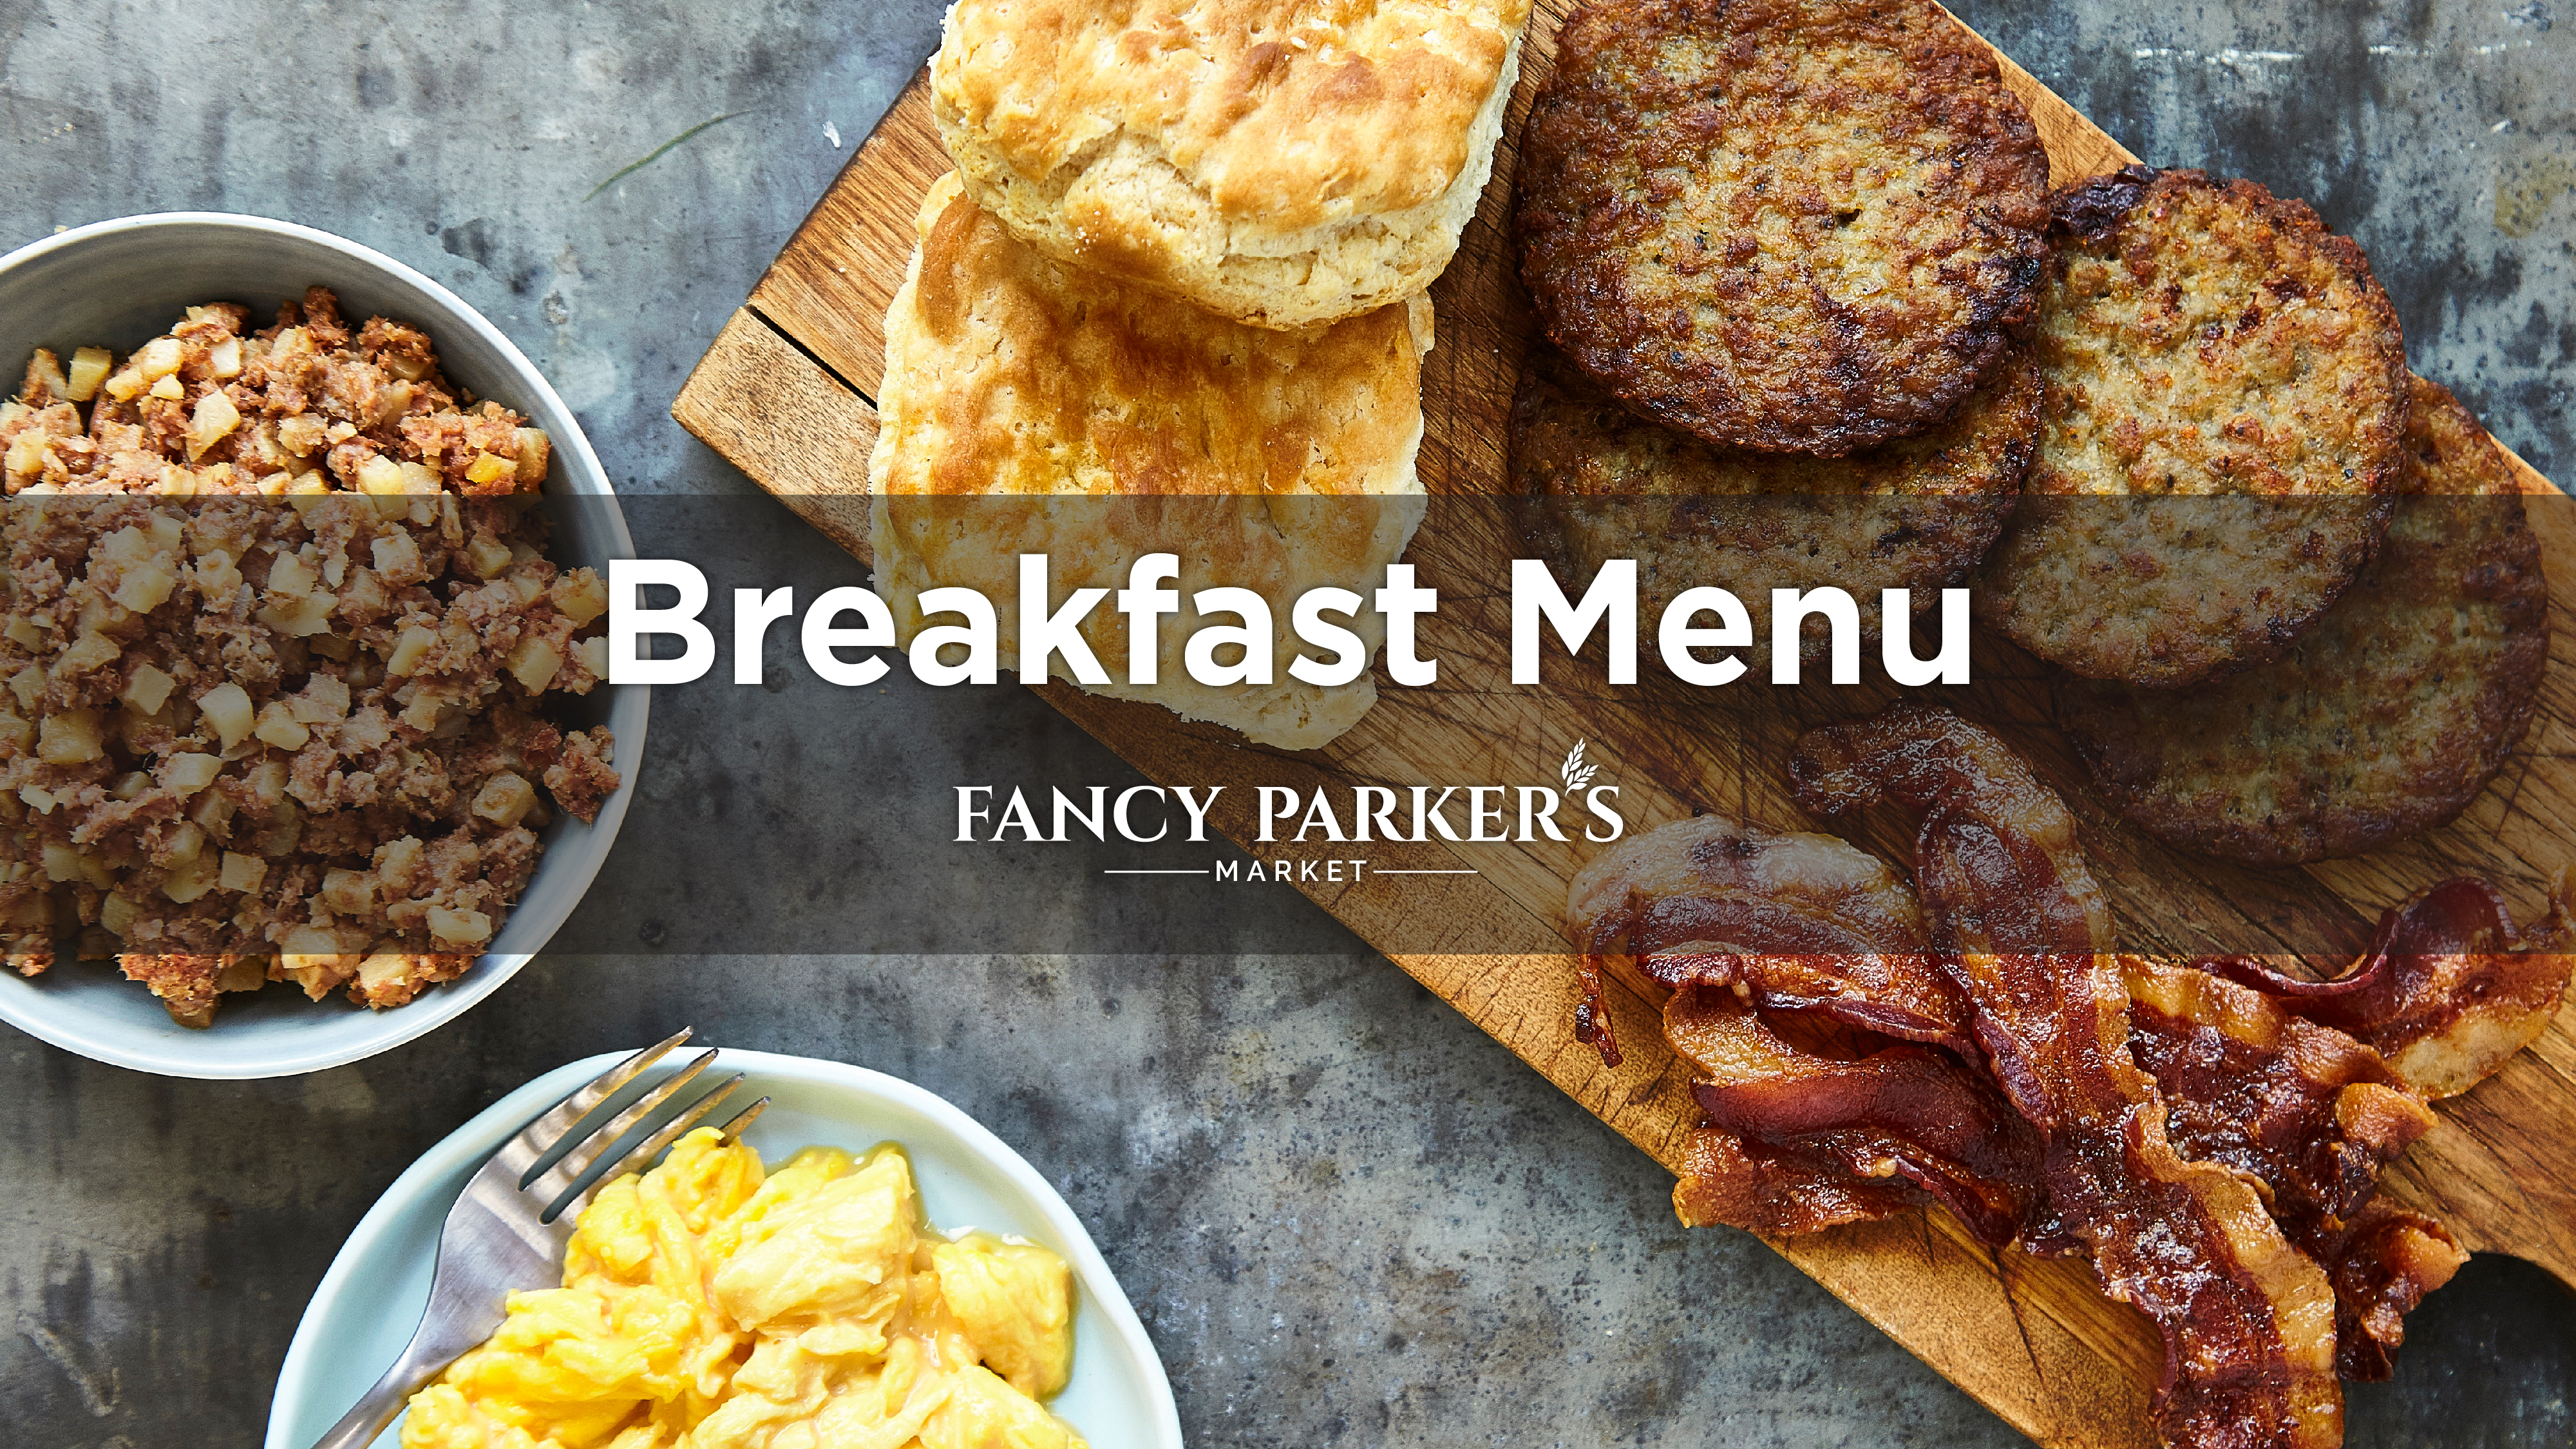 Fancy Parker's Breakfast Menu